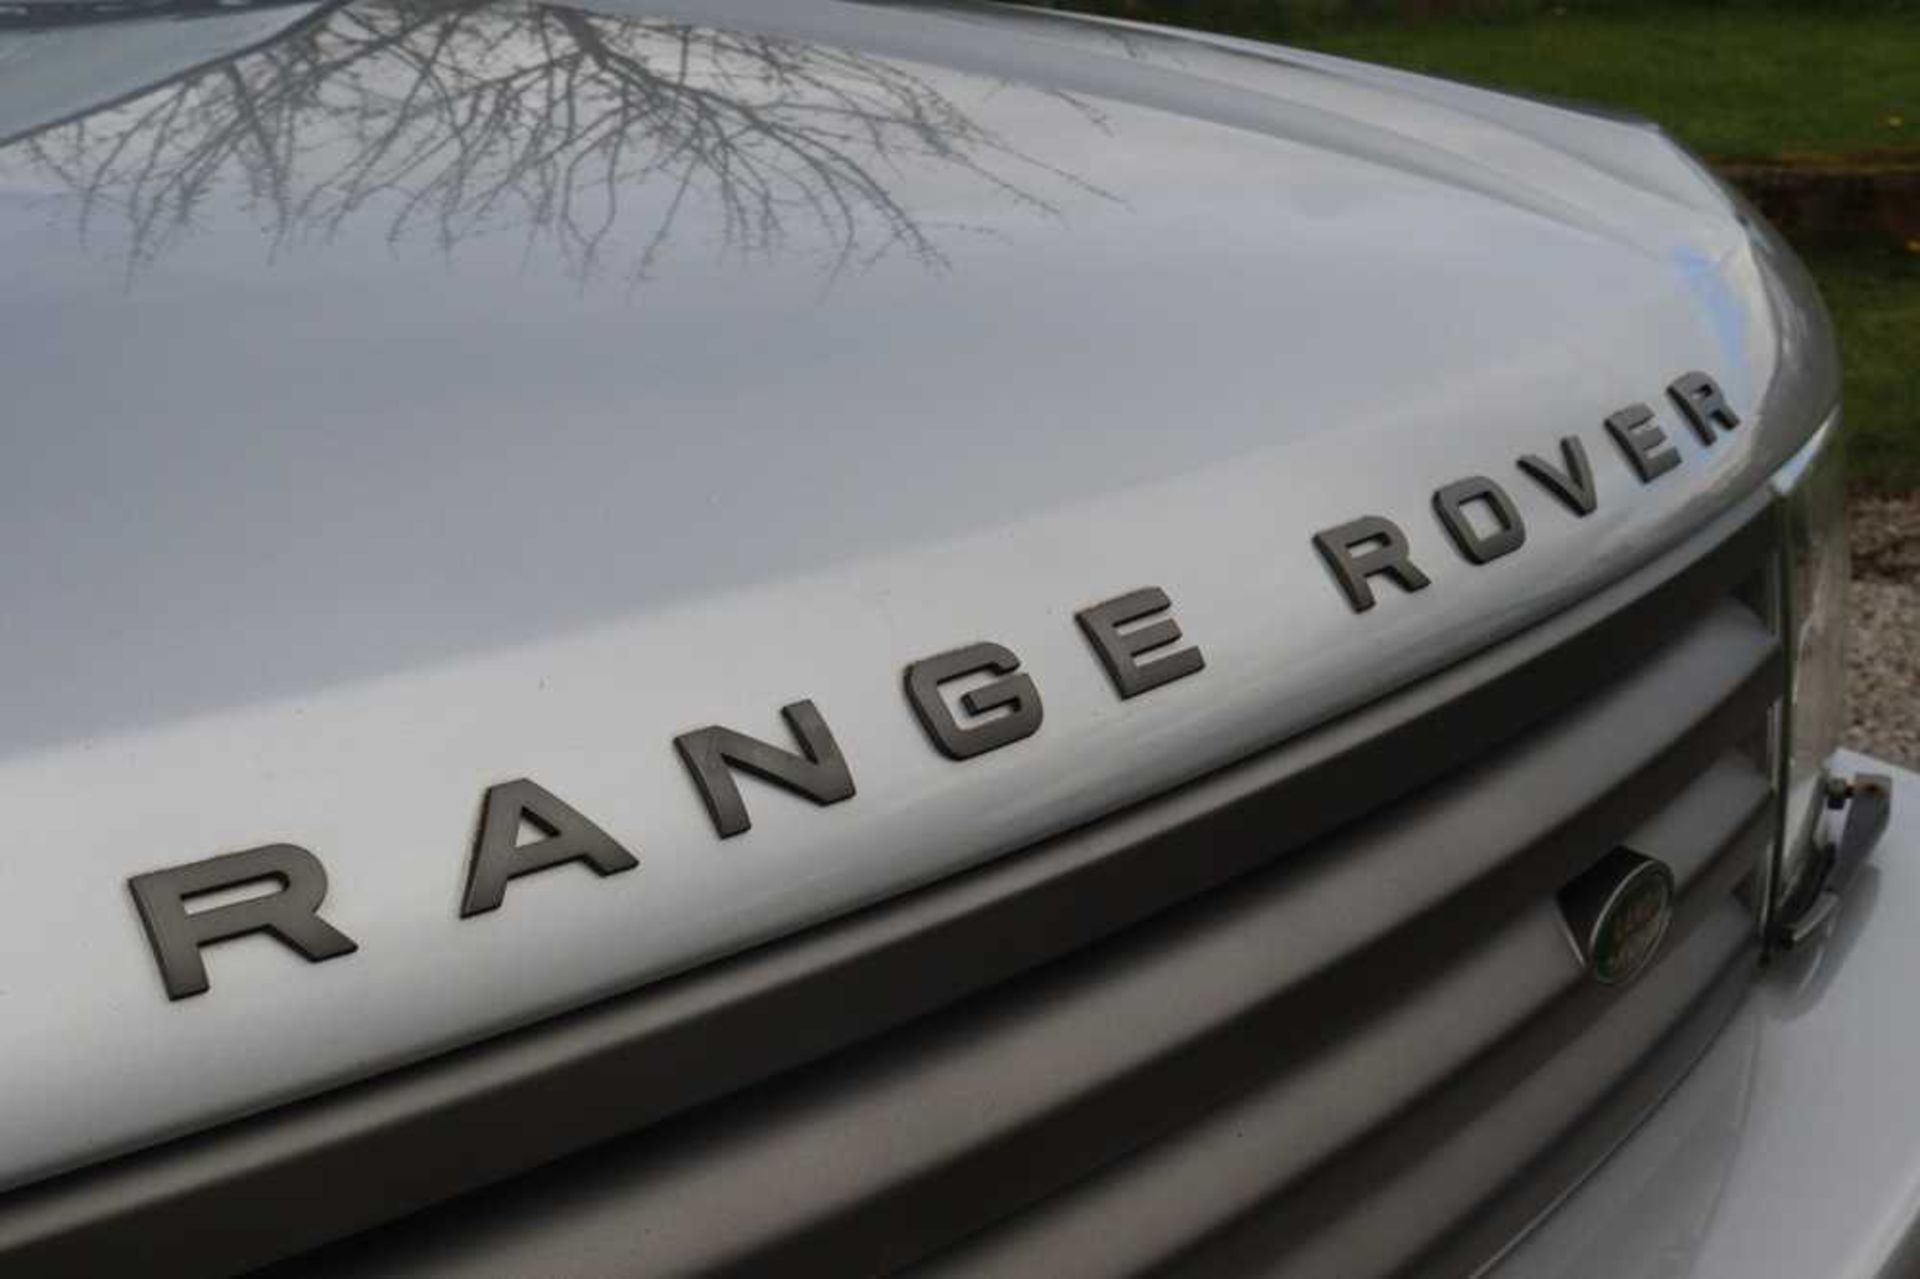 2002 Range Rover Vogue V8 - Image 15 of 53